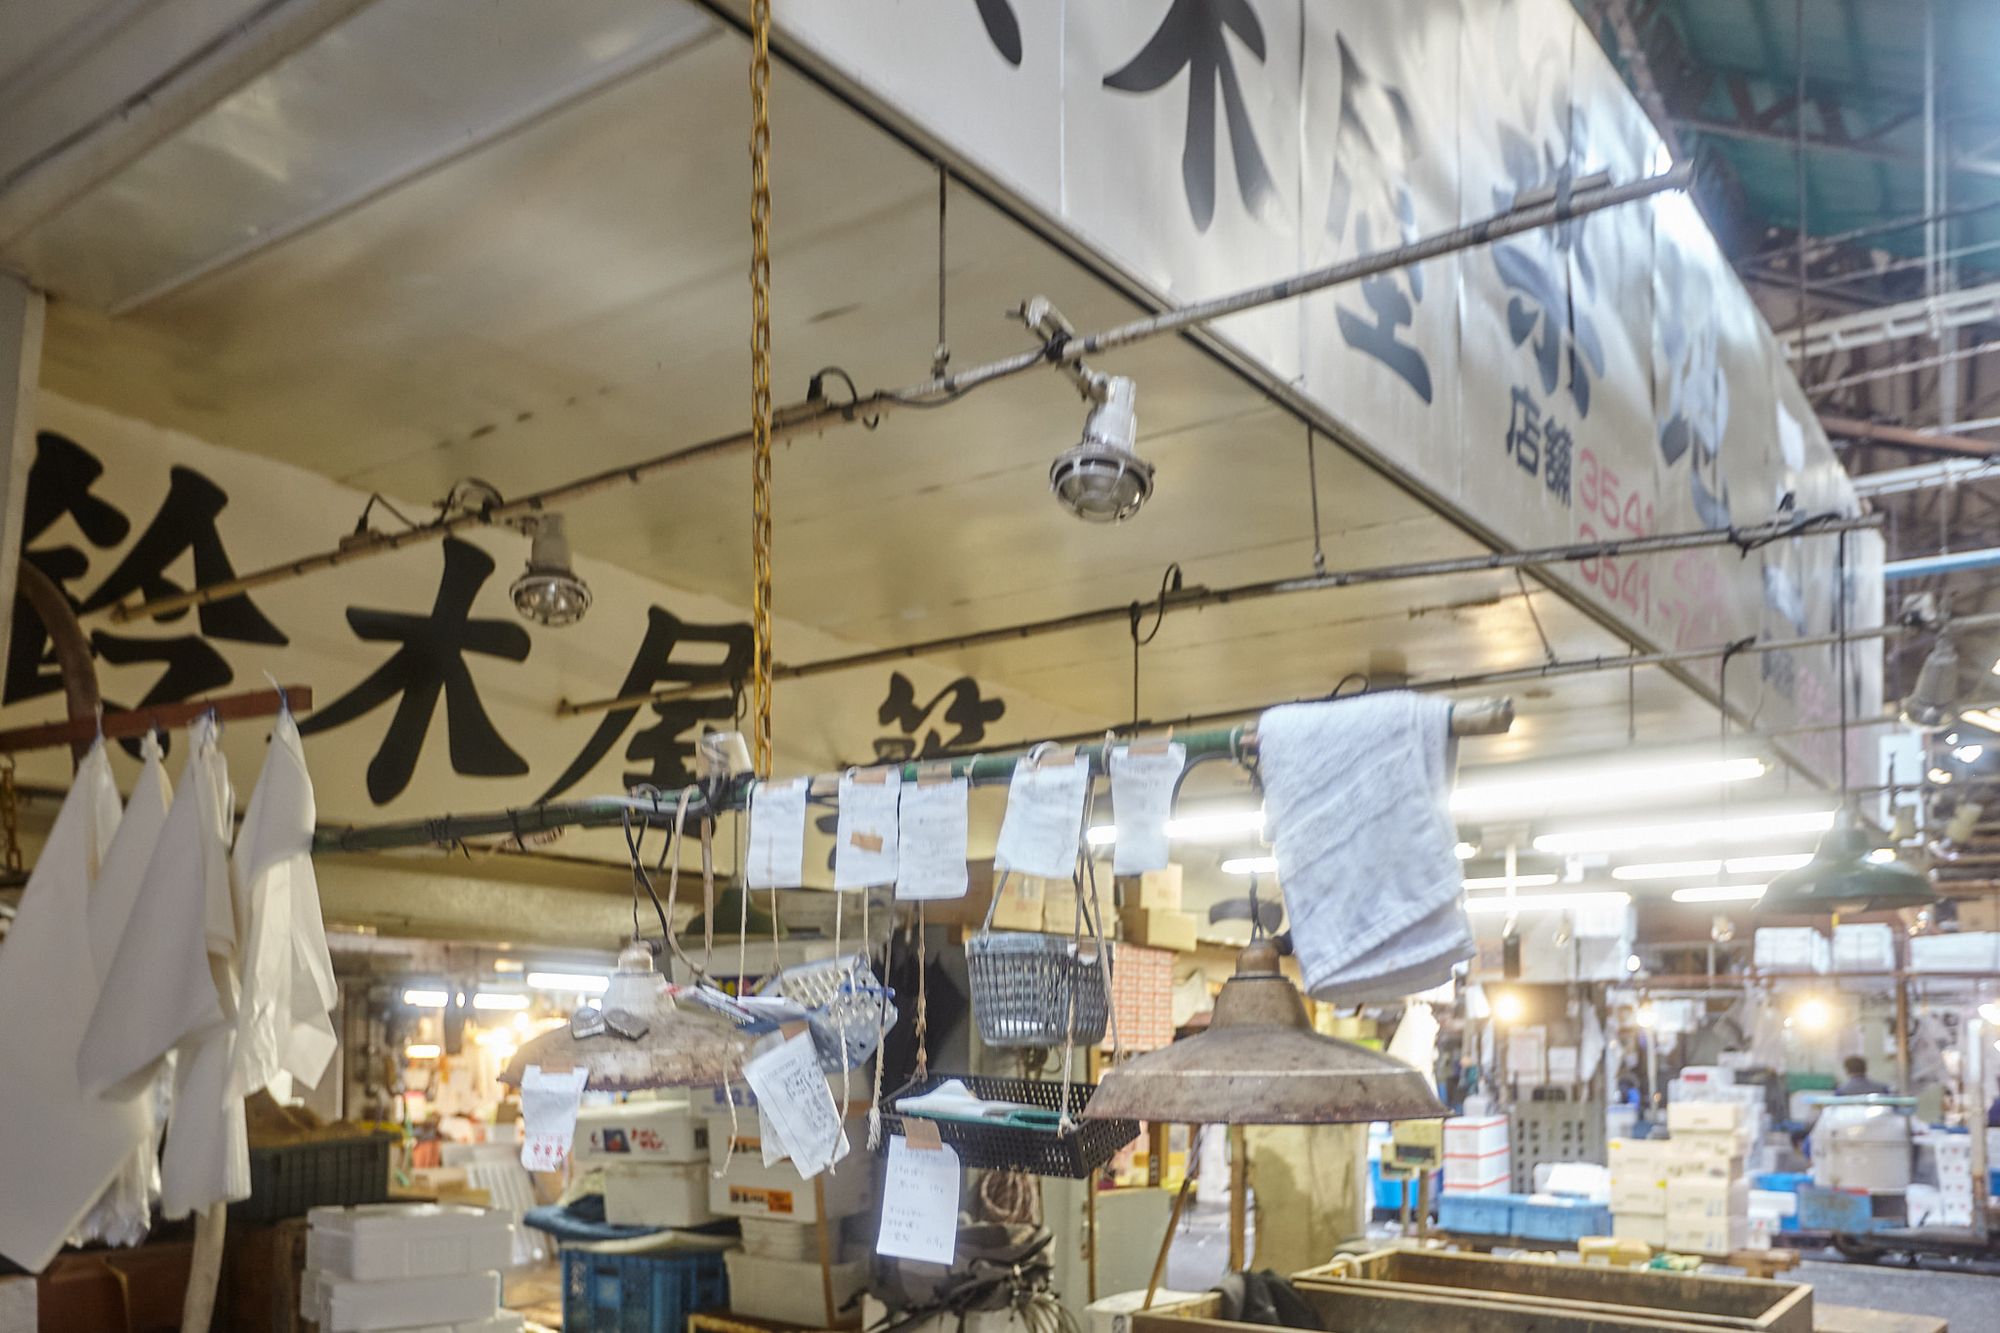 Tsukiji Fish Market in Tokyo